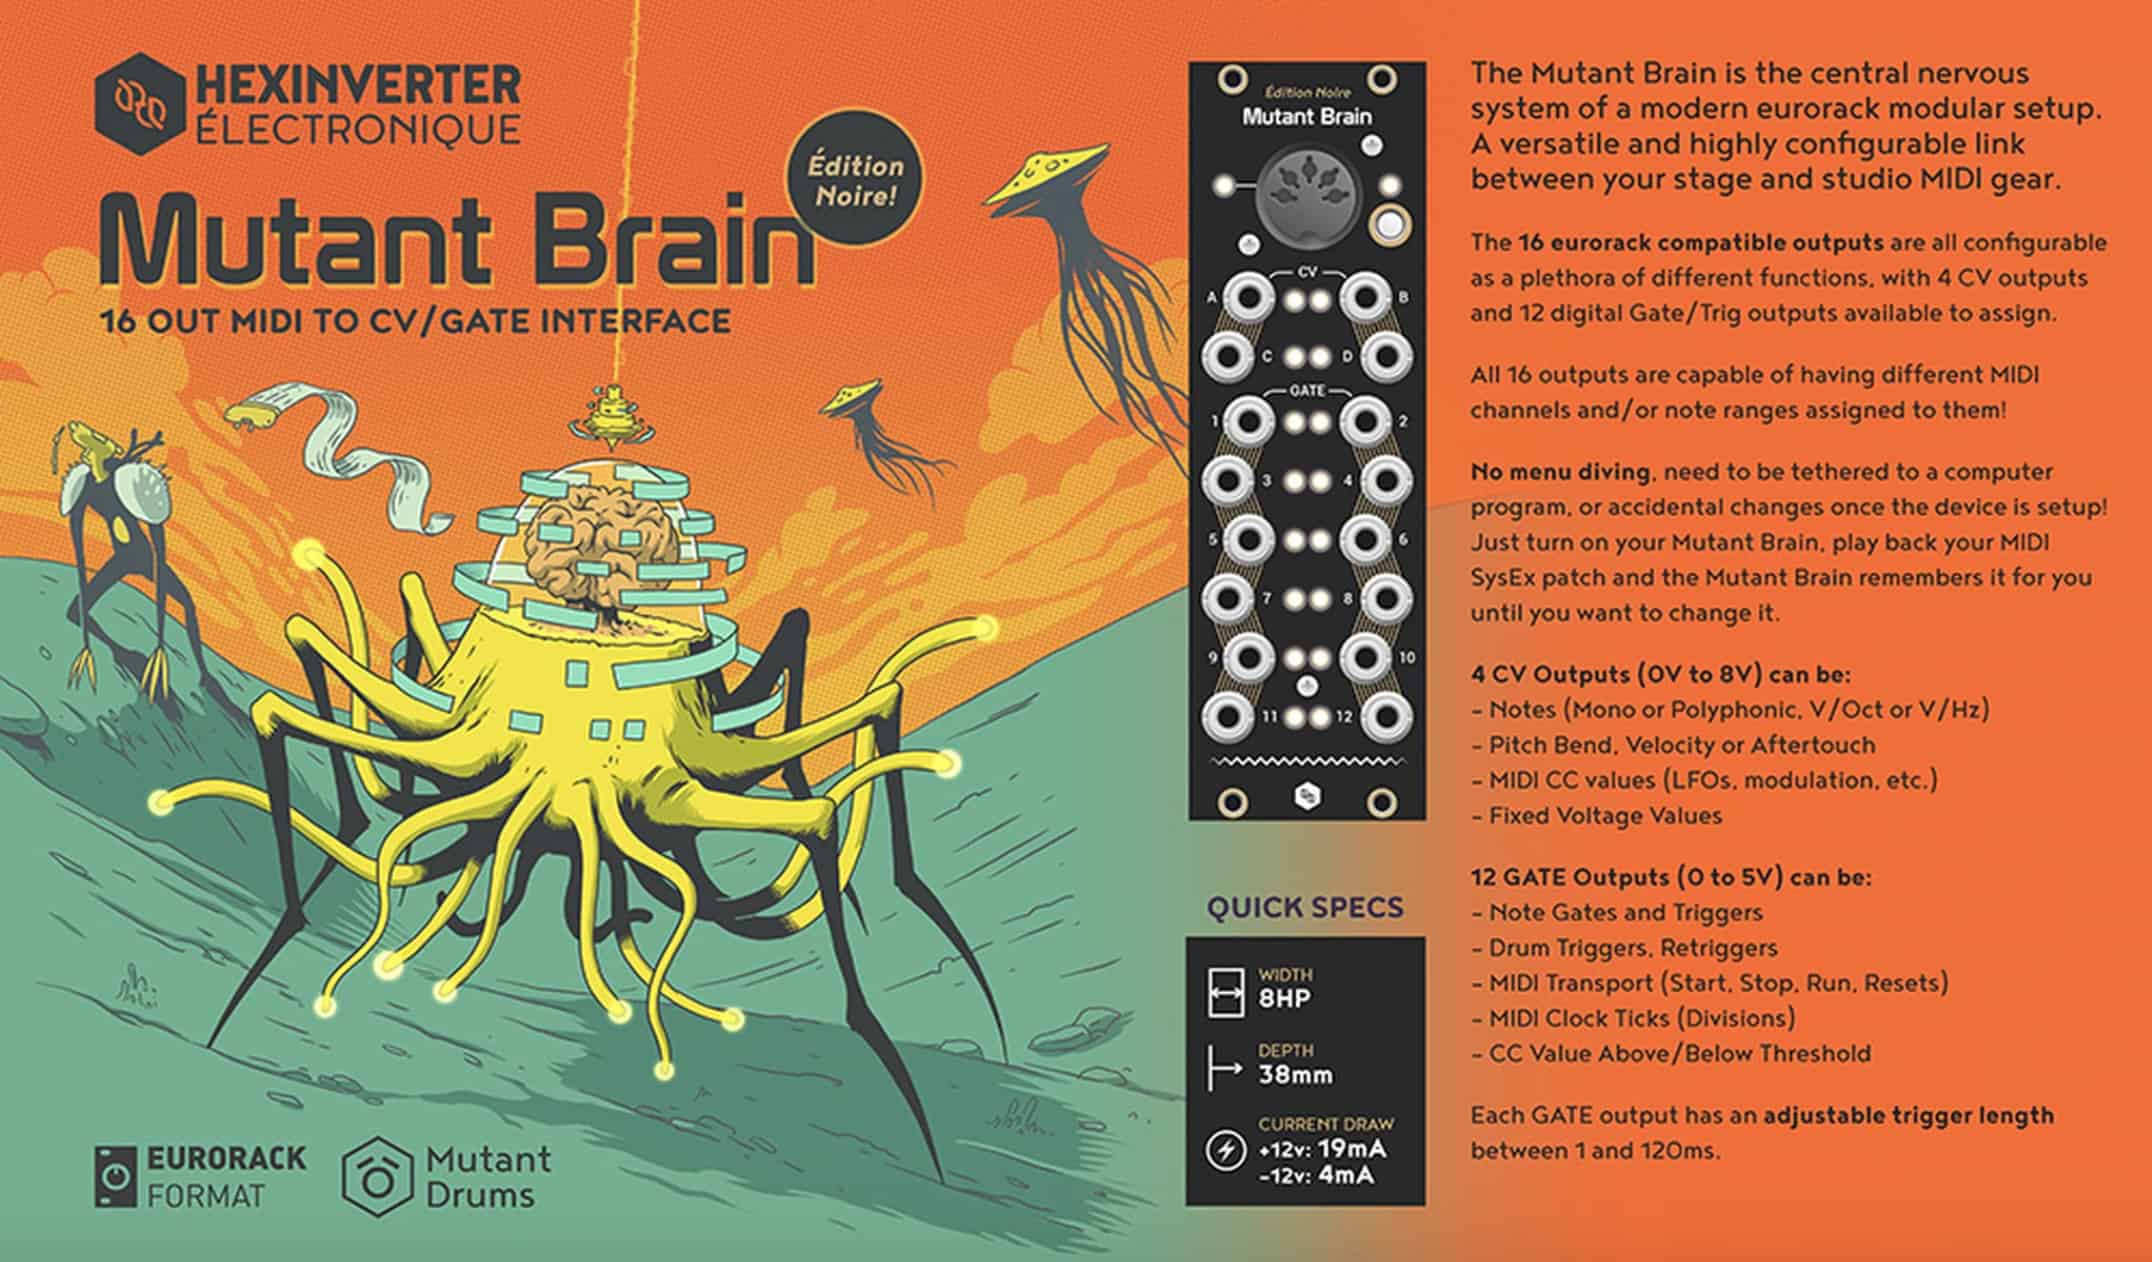 Mutant Brain – Édition Noire by Hexinverter Électronique is now Available